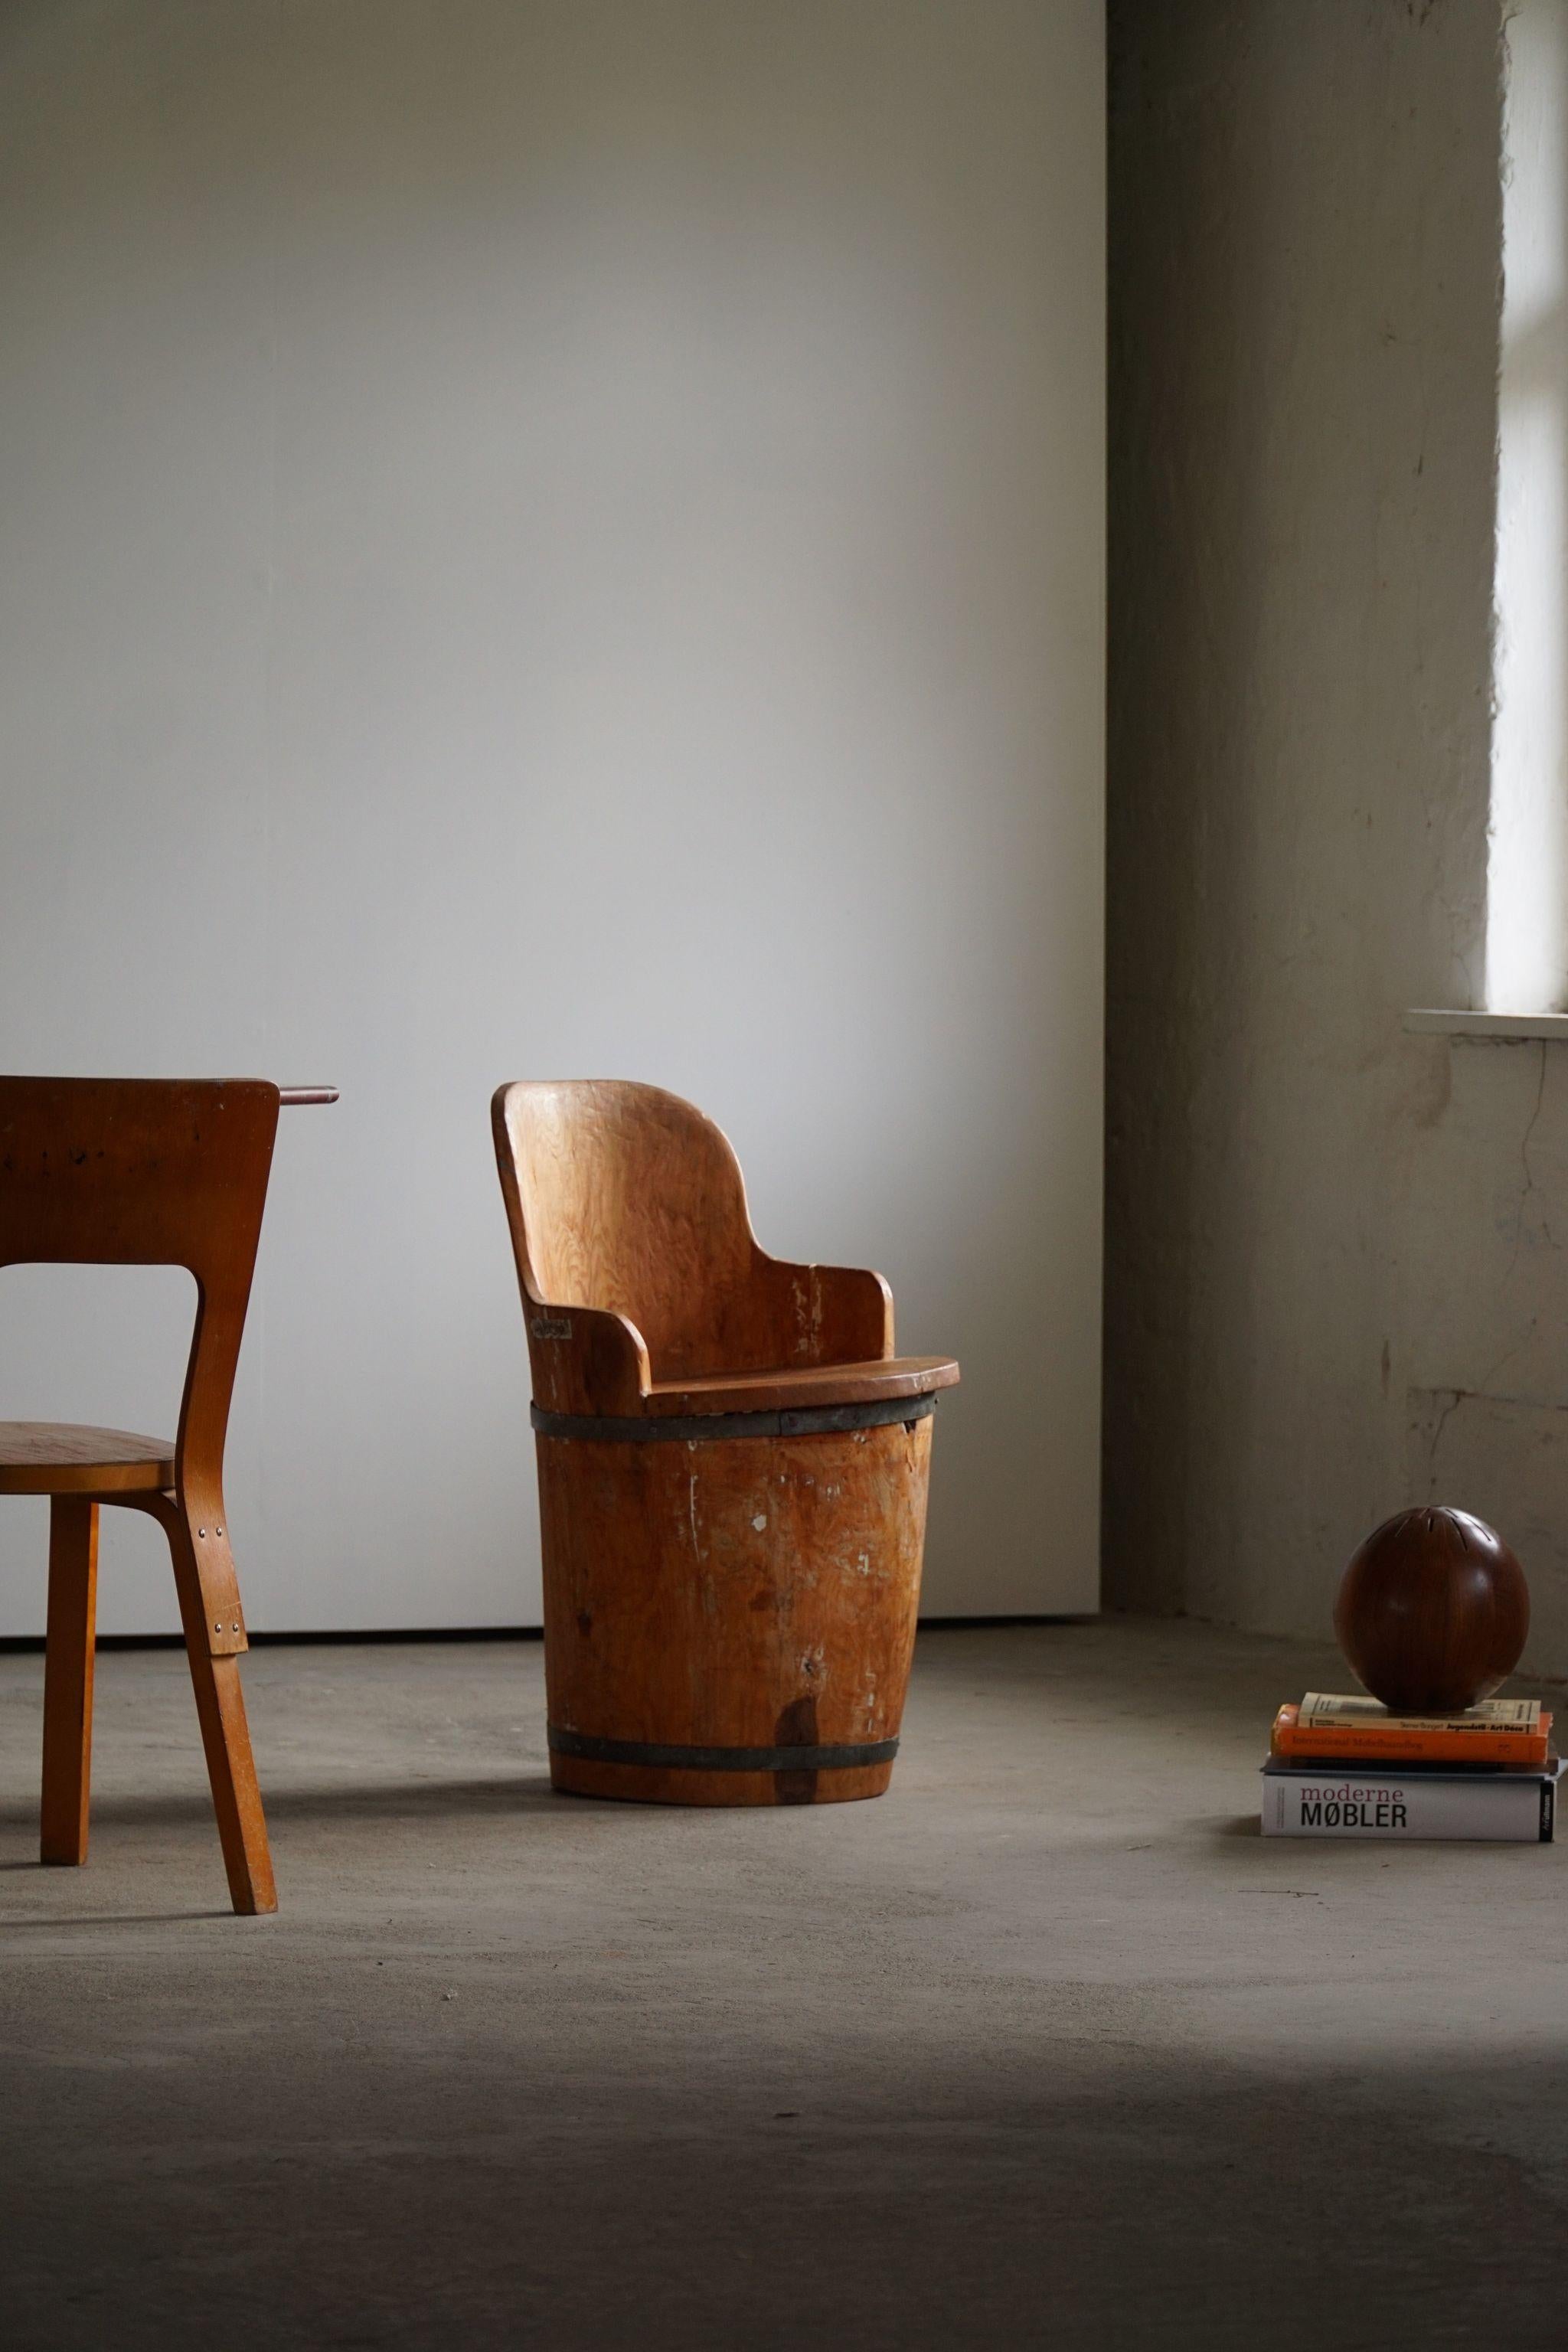 Jolie chaise rustique en pin massif. Sculptée à la main par un ébéniste suédois inconnu. Une belle pièce wabi sabi, parfaitement adaptée à l'intérieur moderne.

Ce fauteuil moderne s'adaptera à de nombreux types de décors d'intérieur. Parfaitement